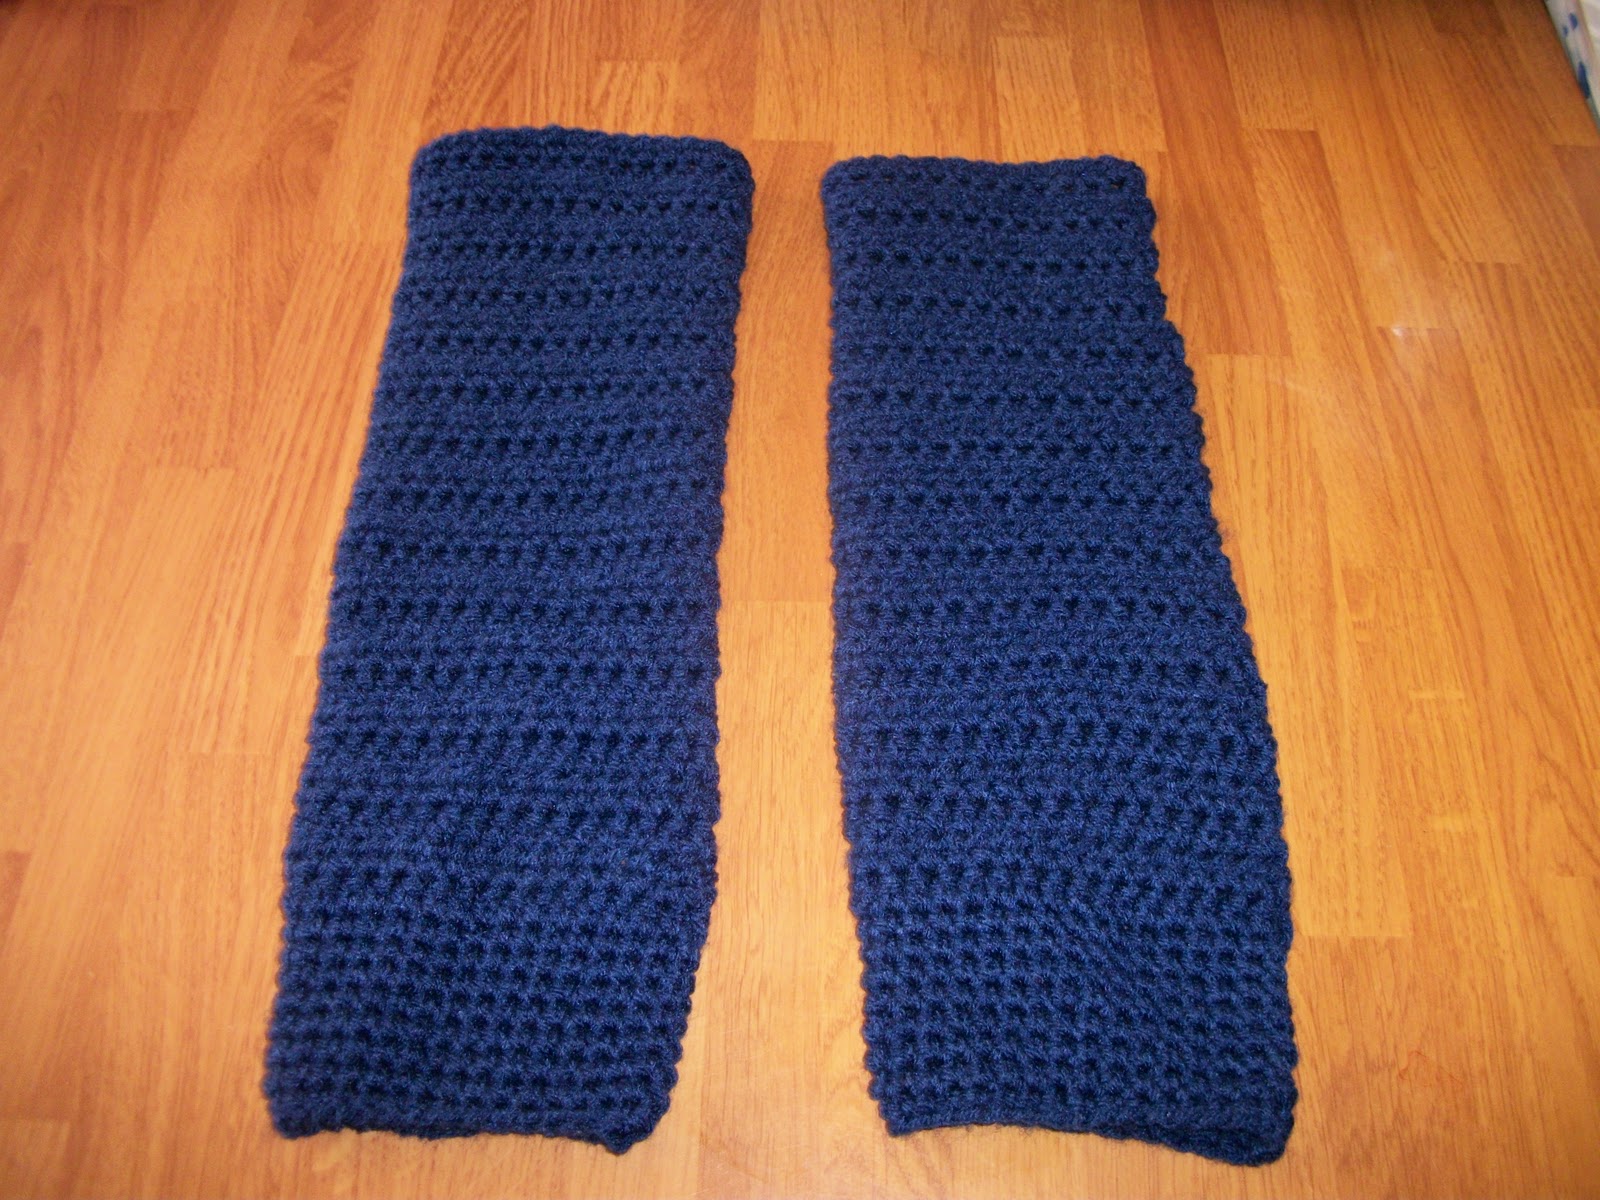 Crochet legwarmer patterns - Squidoo : Welcome to Squidoo